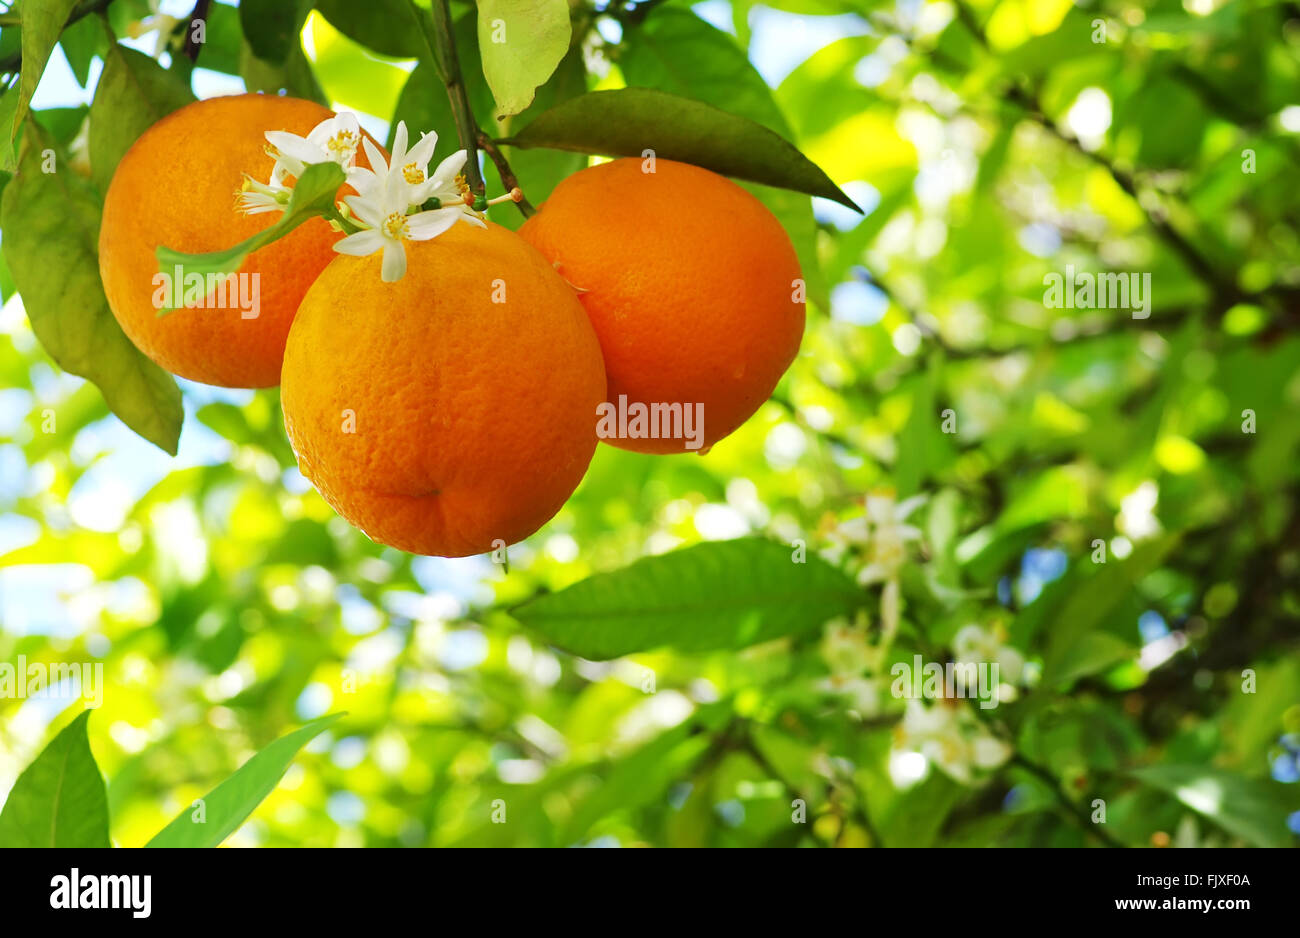 Close-Up Of Orange Fruits Growing On Tree Stock Photo